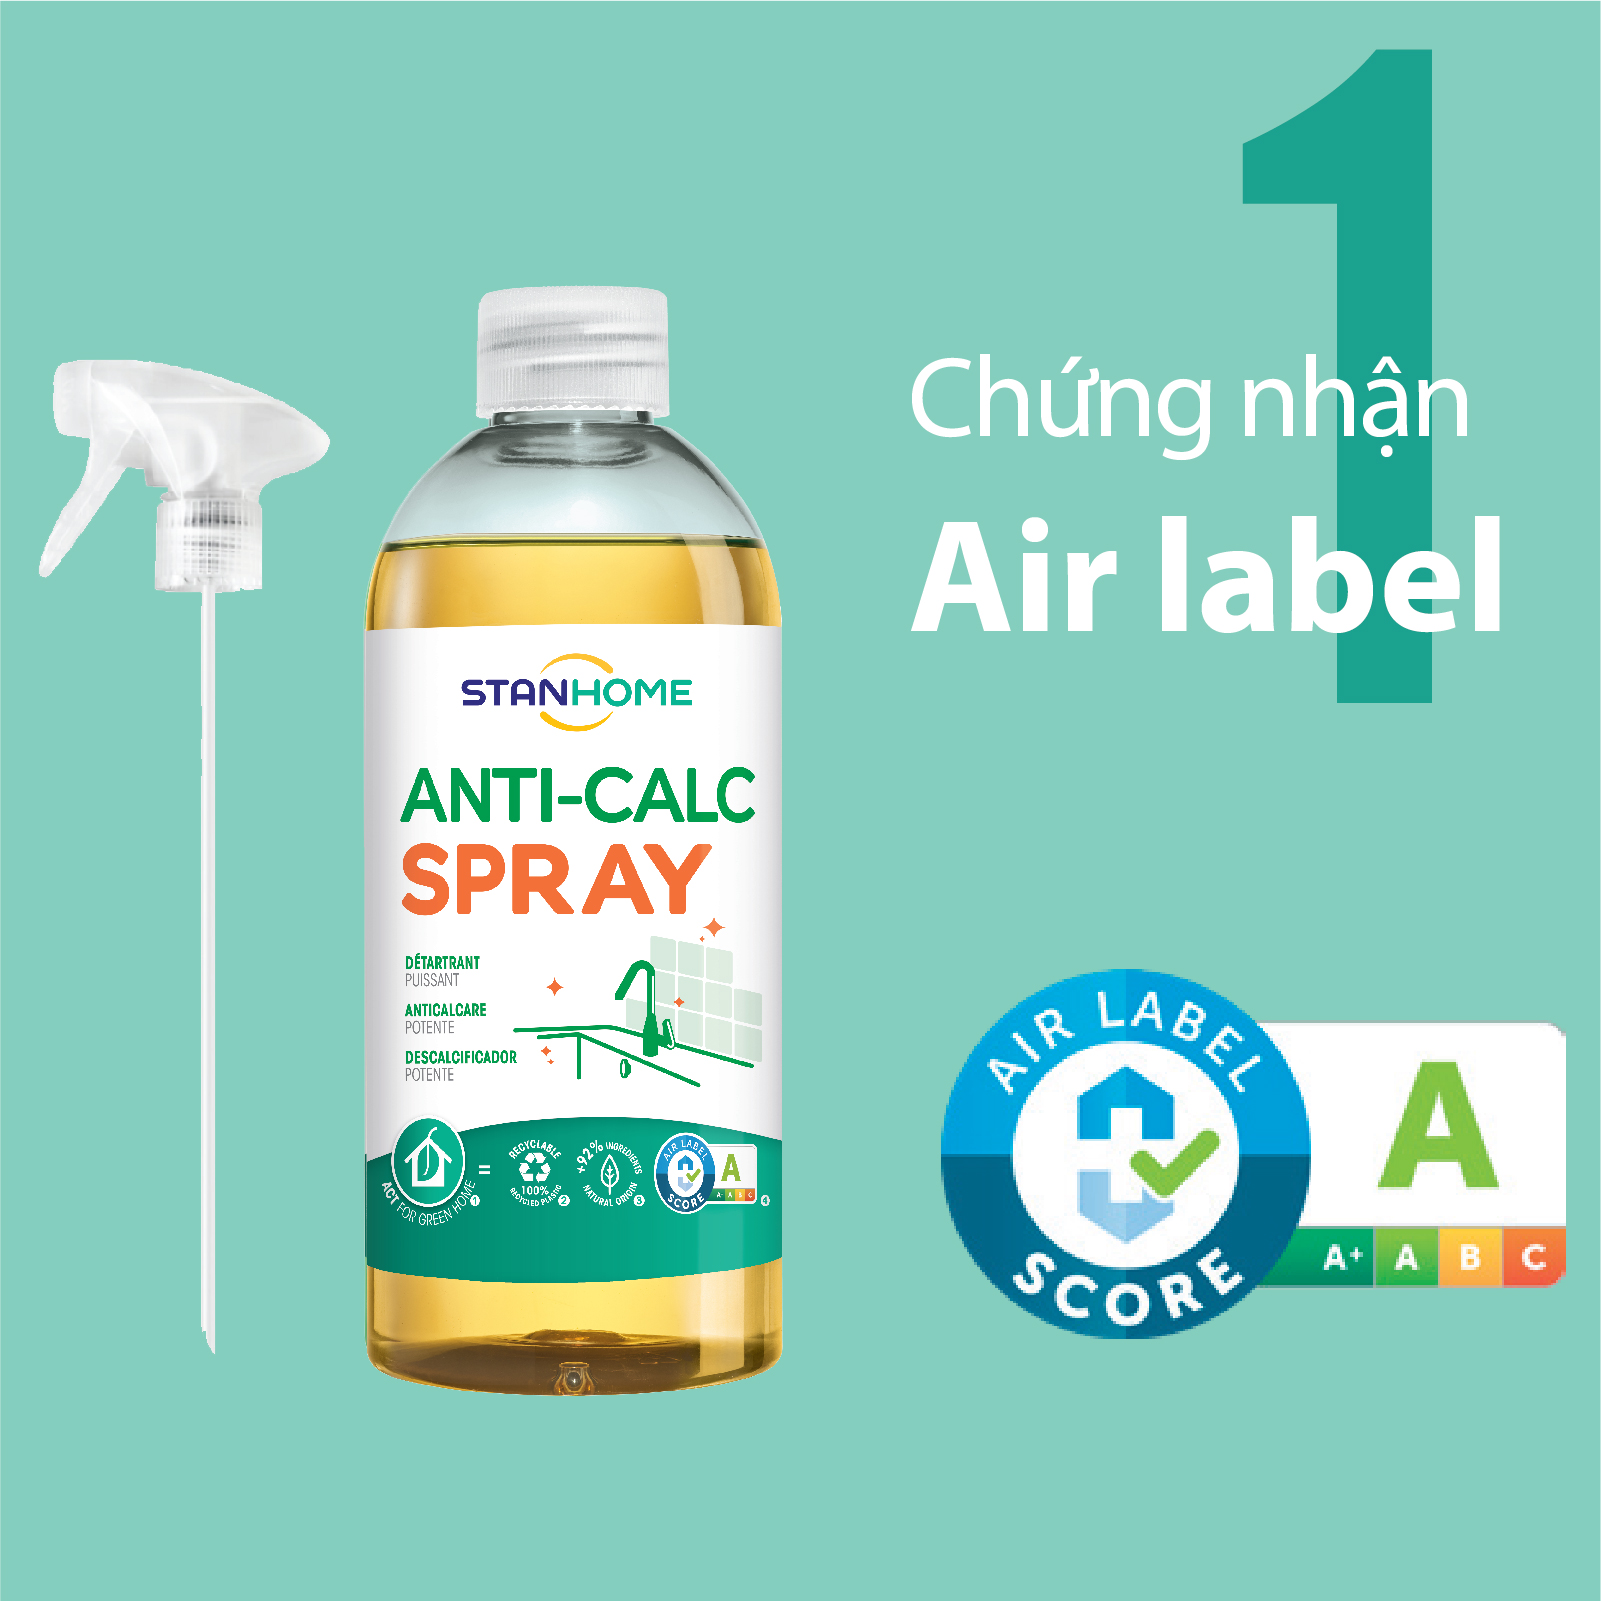 Siêu tẩy cặn canxi nước cứng cho mọi bề mặt và thiết bị trong nhà Anti Calc Stanhome tiêu chuẩn Air Label Ccore 500ml